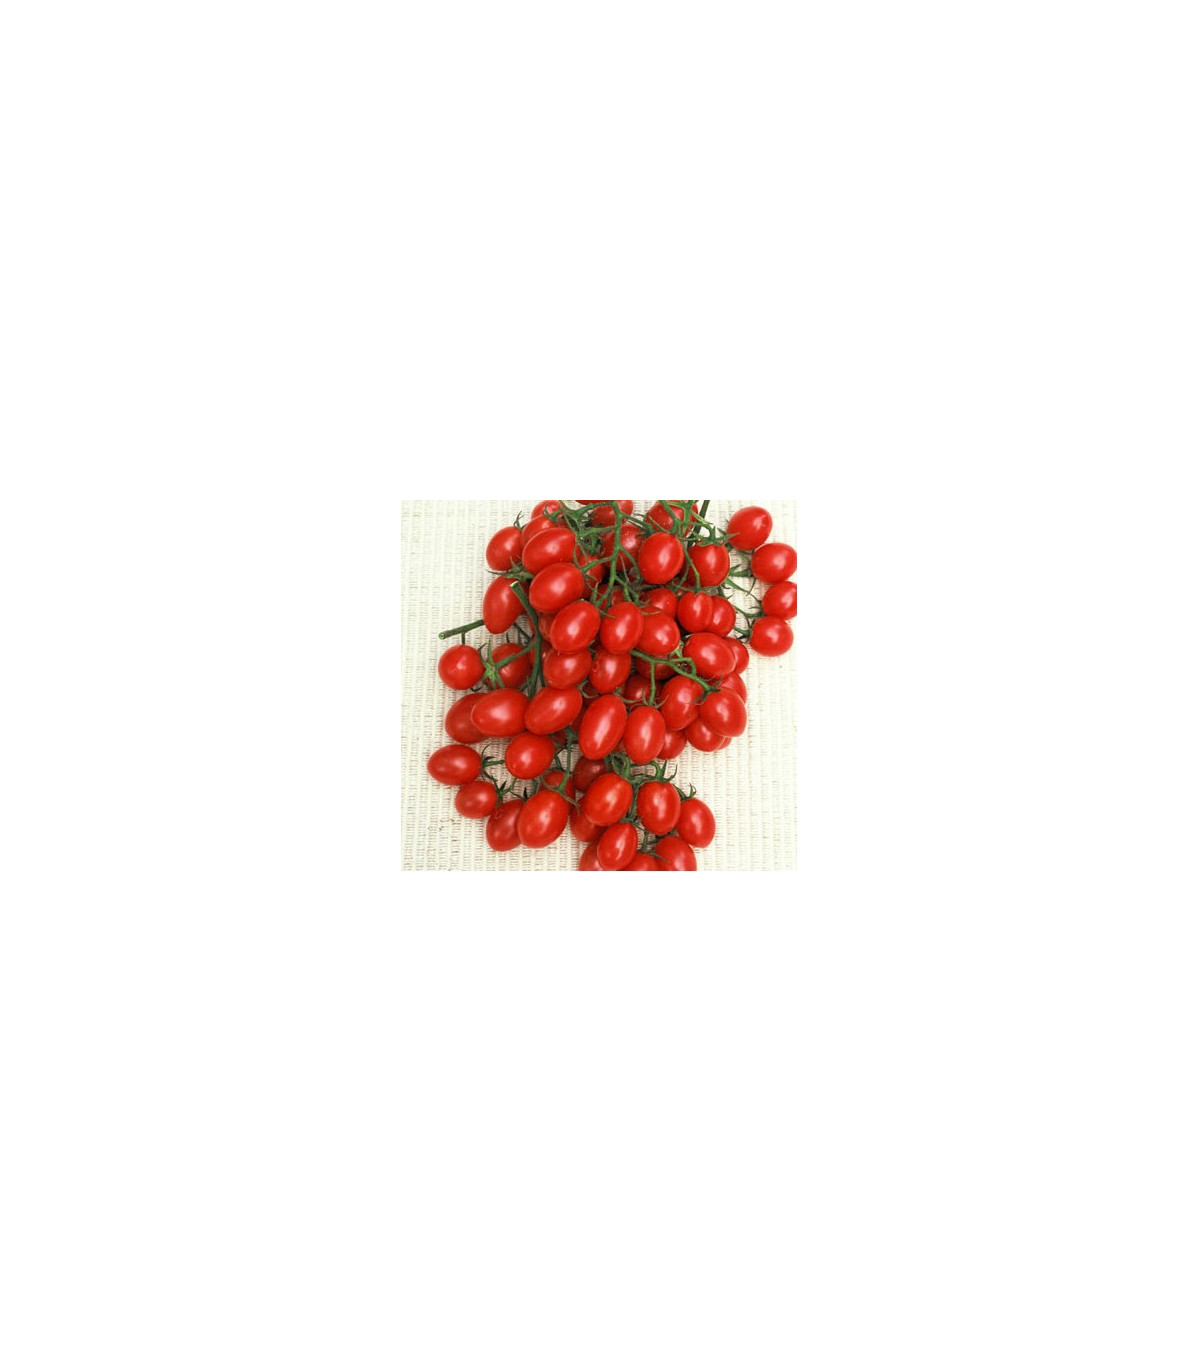 Paradajka- Rosalita- semiačká paradajky- 7 ks